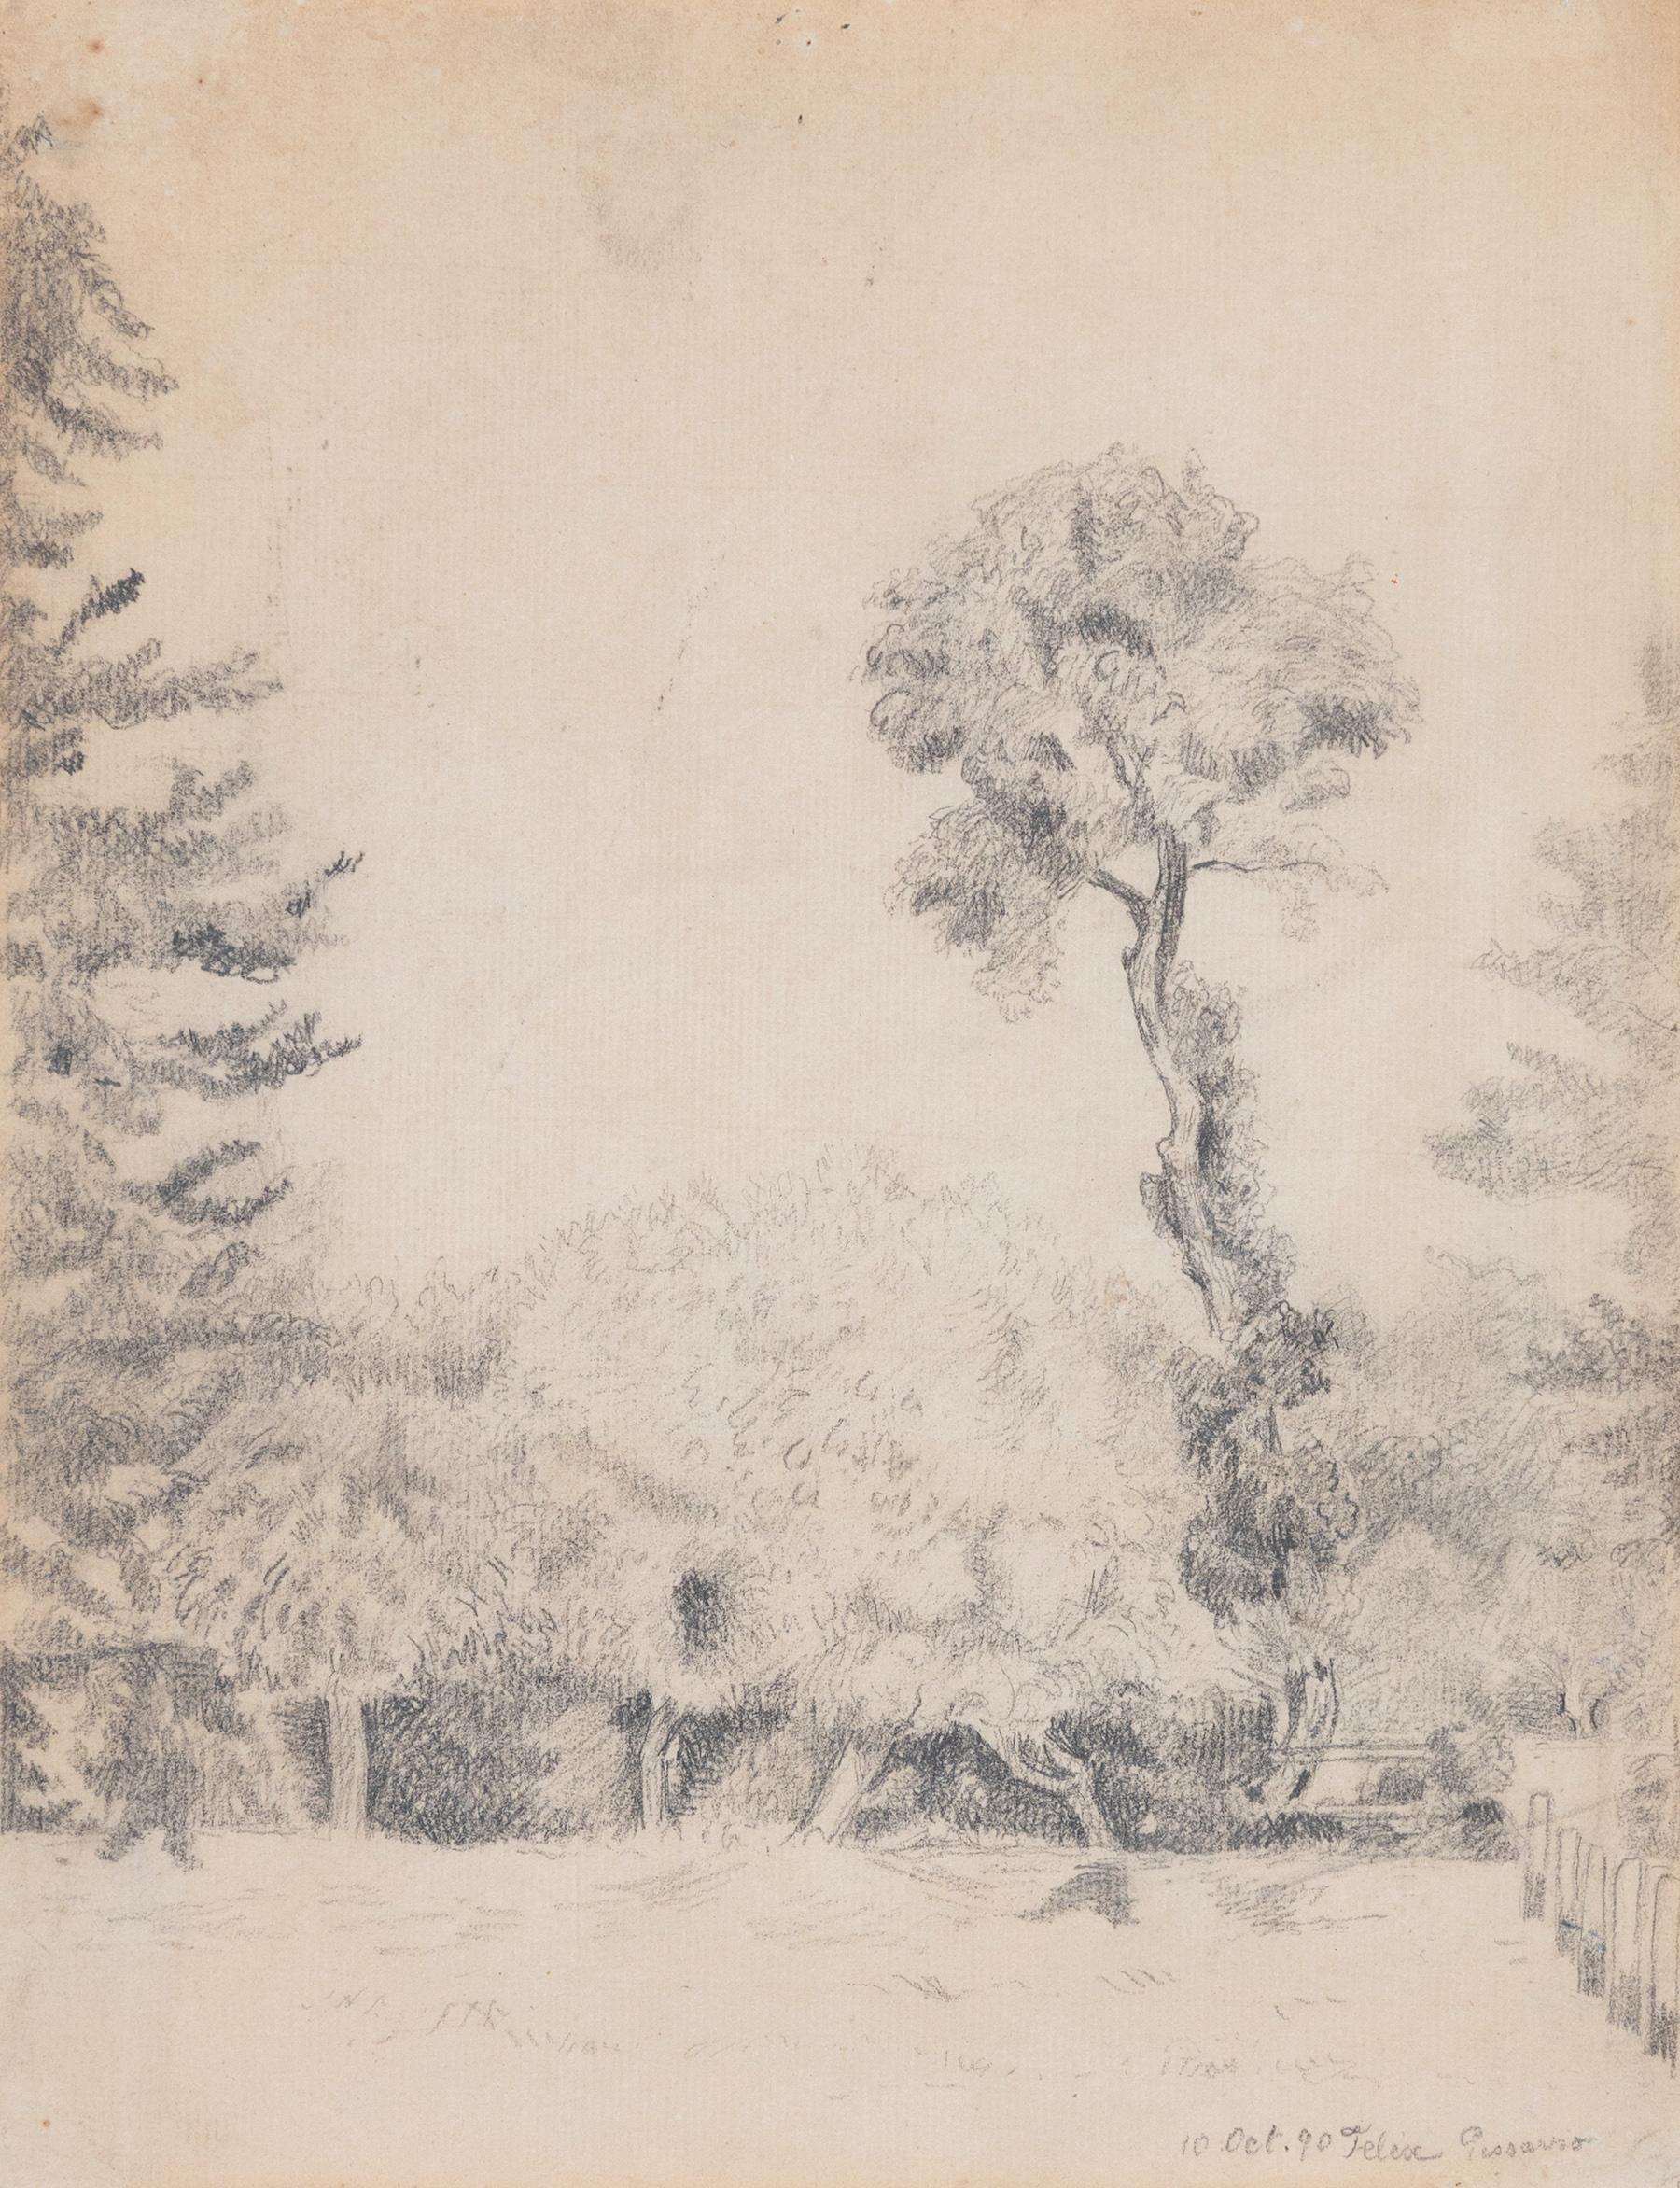 Landscape Art Félix Pissarro - Paysage avec arbres de Flix Pissarro - Dessin